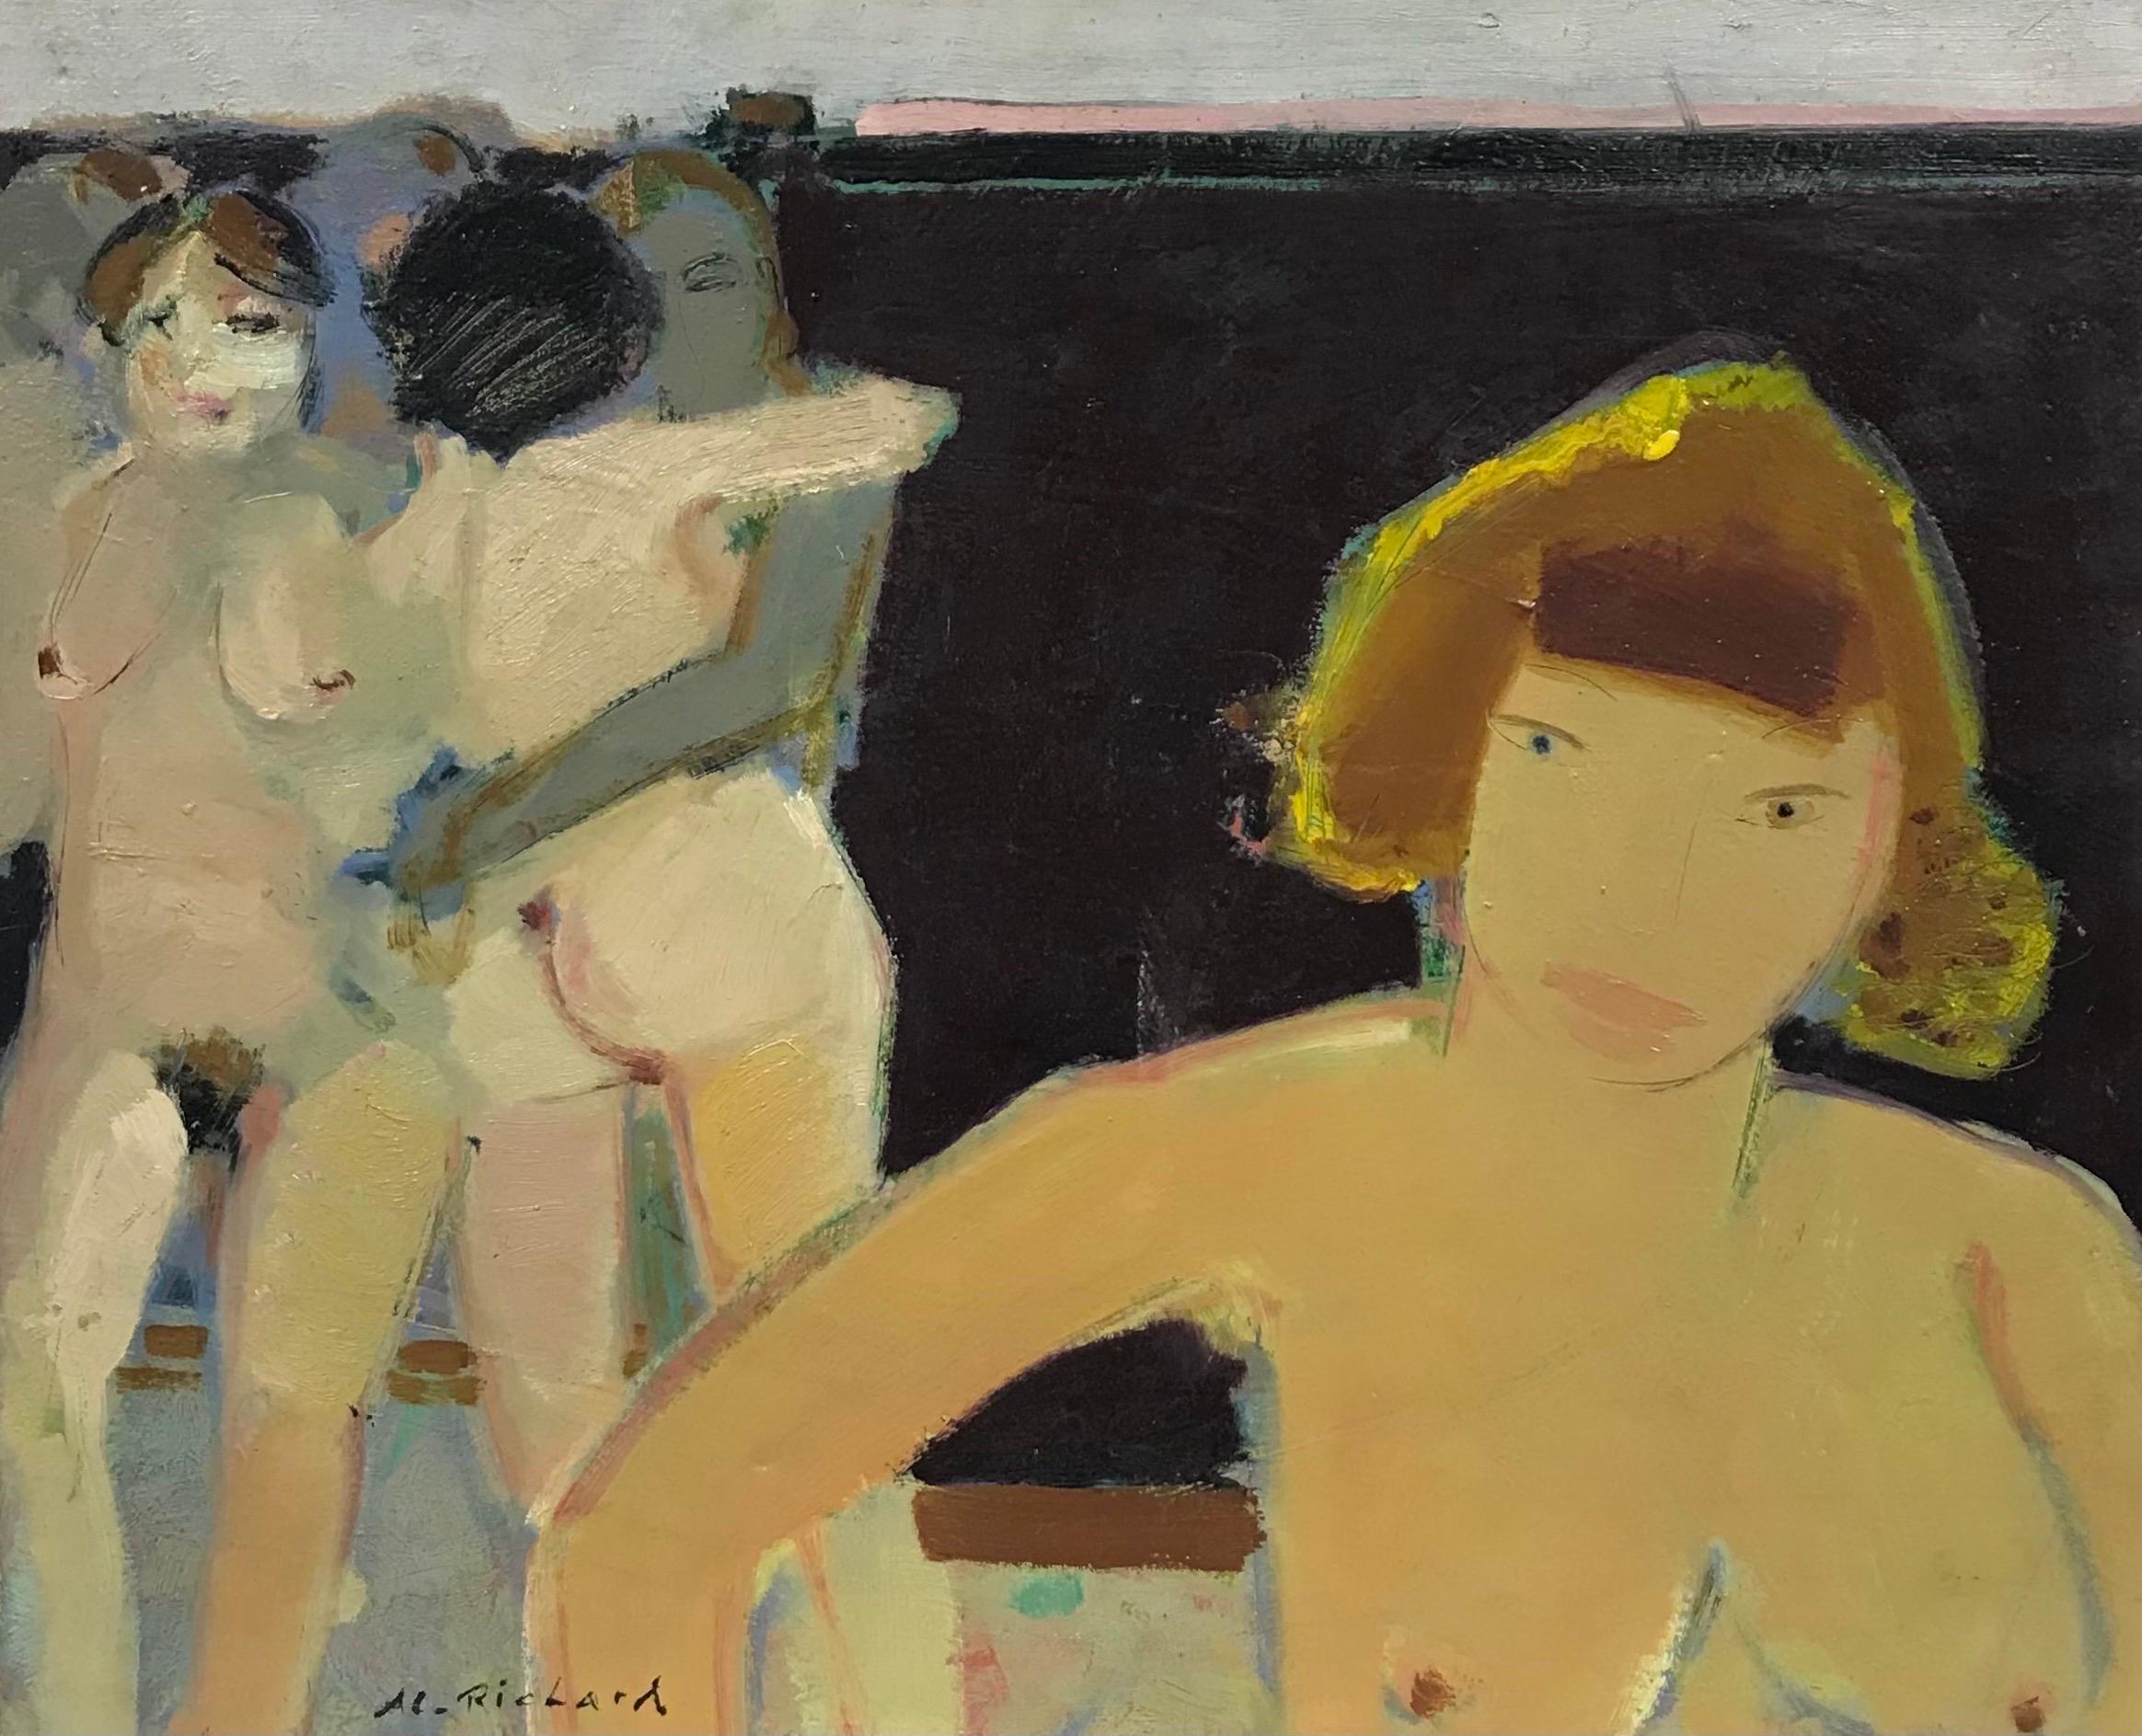 Nude Painting 20th Century French School - Huile signée par le moderniste français - Groupe figuratif de femmes nues amoureux, XXe siècle